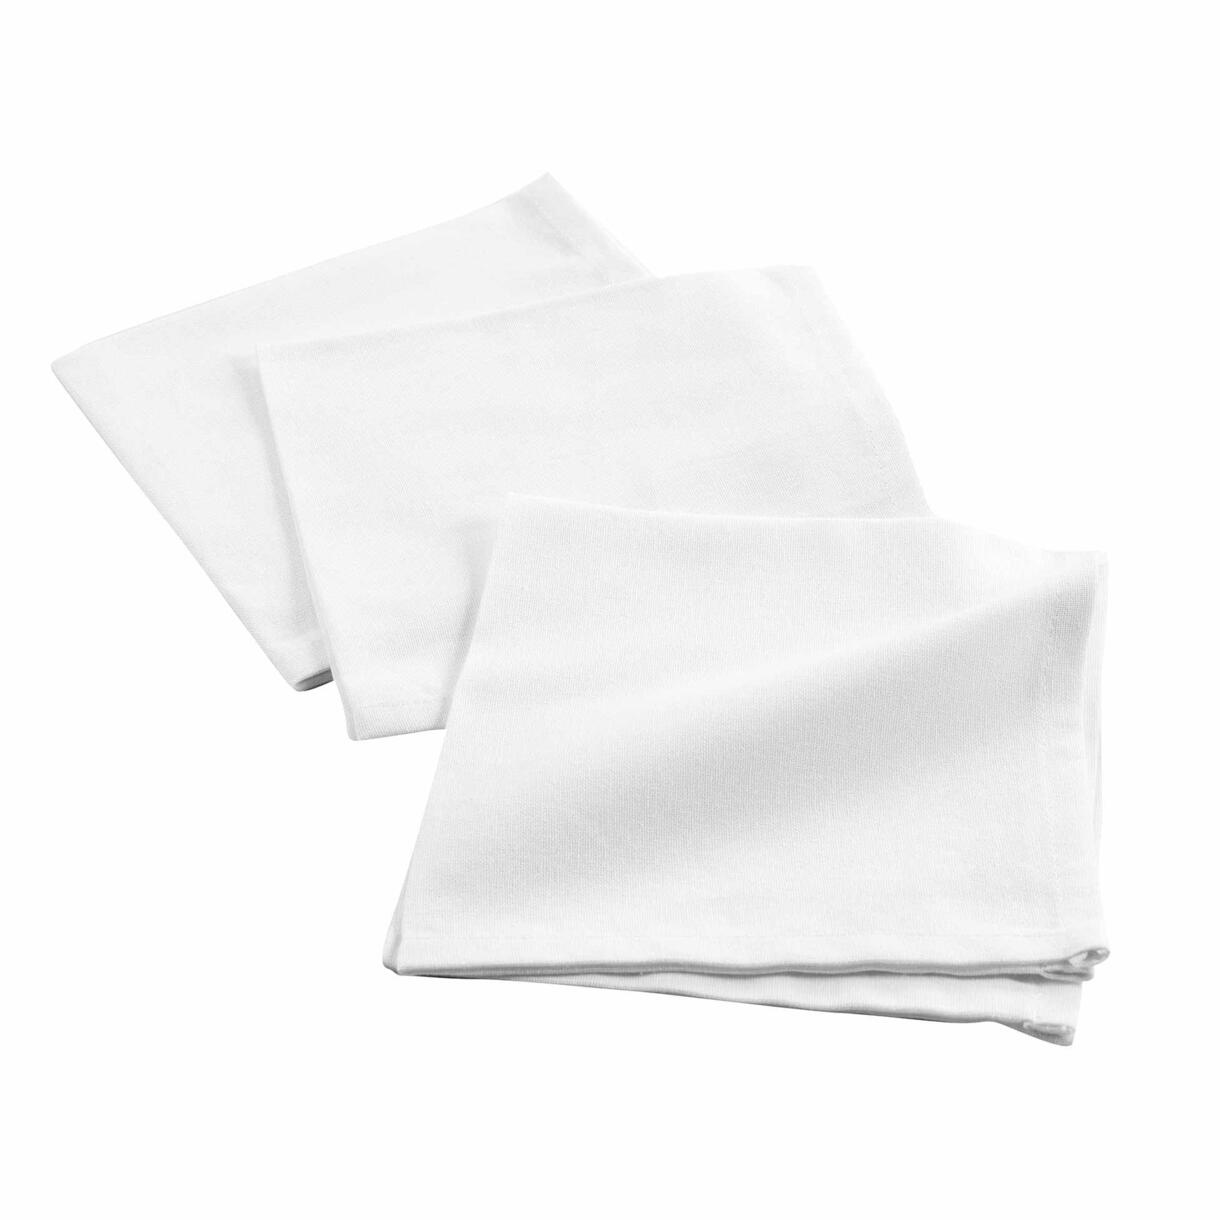 Lote de 3 servilletas algodón Initia Blanco 1